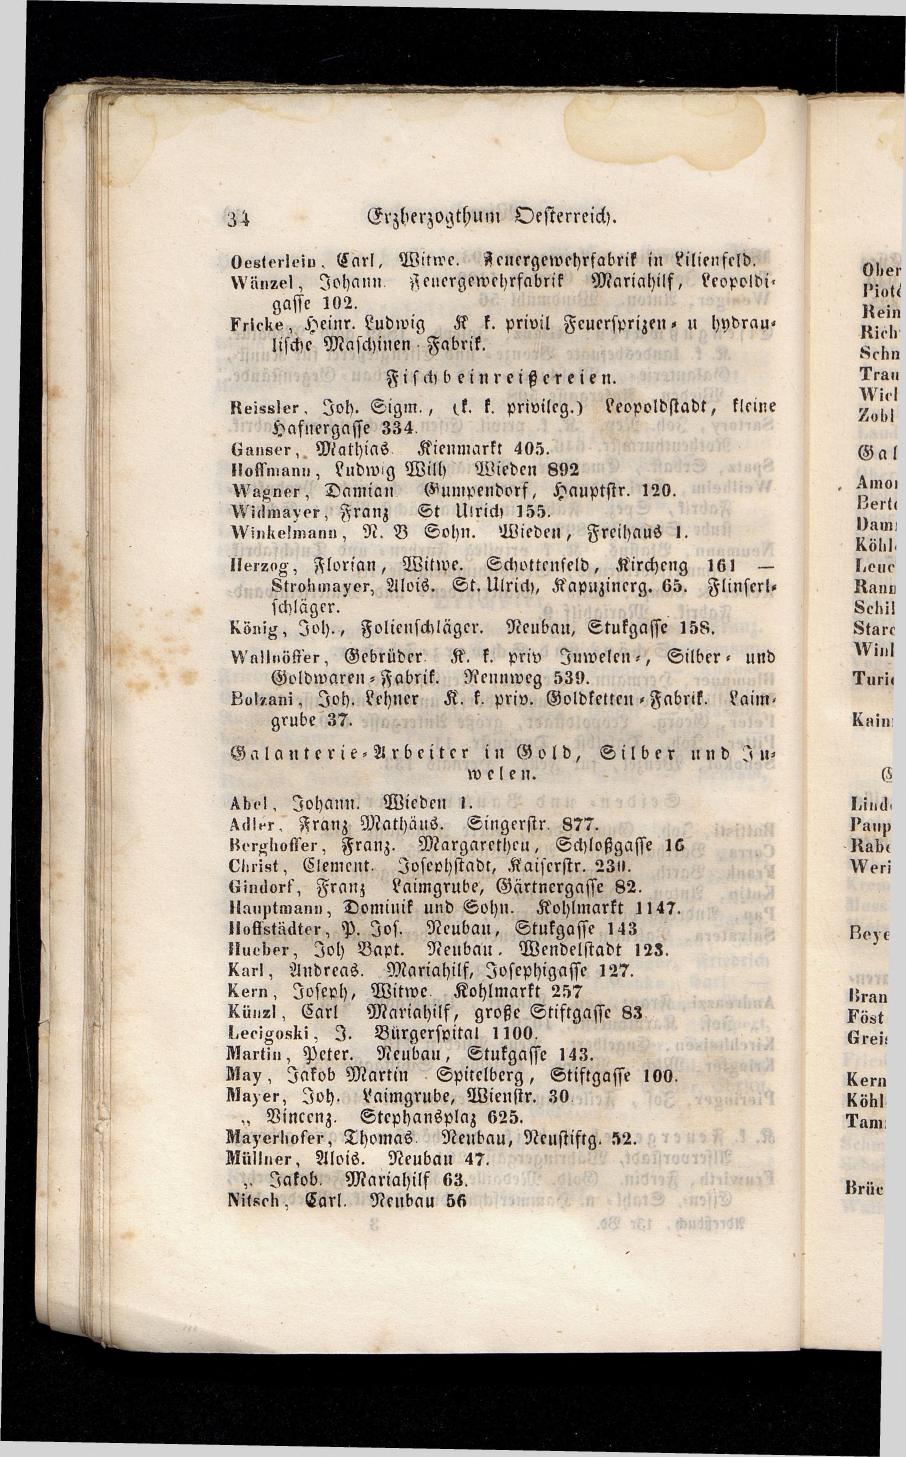 Grosses Adressbuch der Kaufleute. No. 13. Oesterreich ober u. unter der Enns 1844 - Seite 38